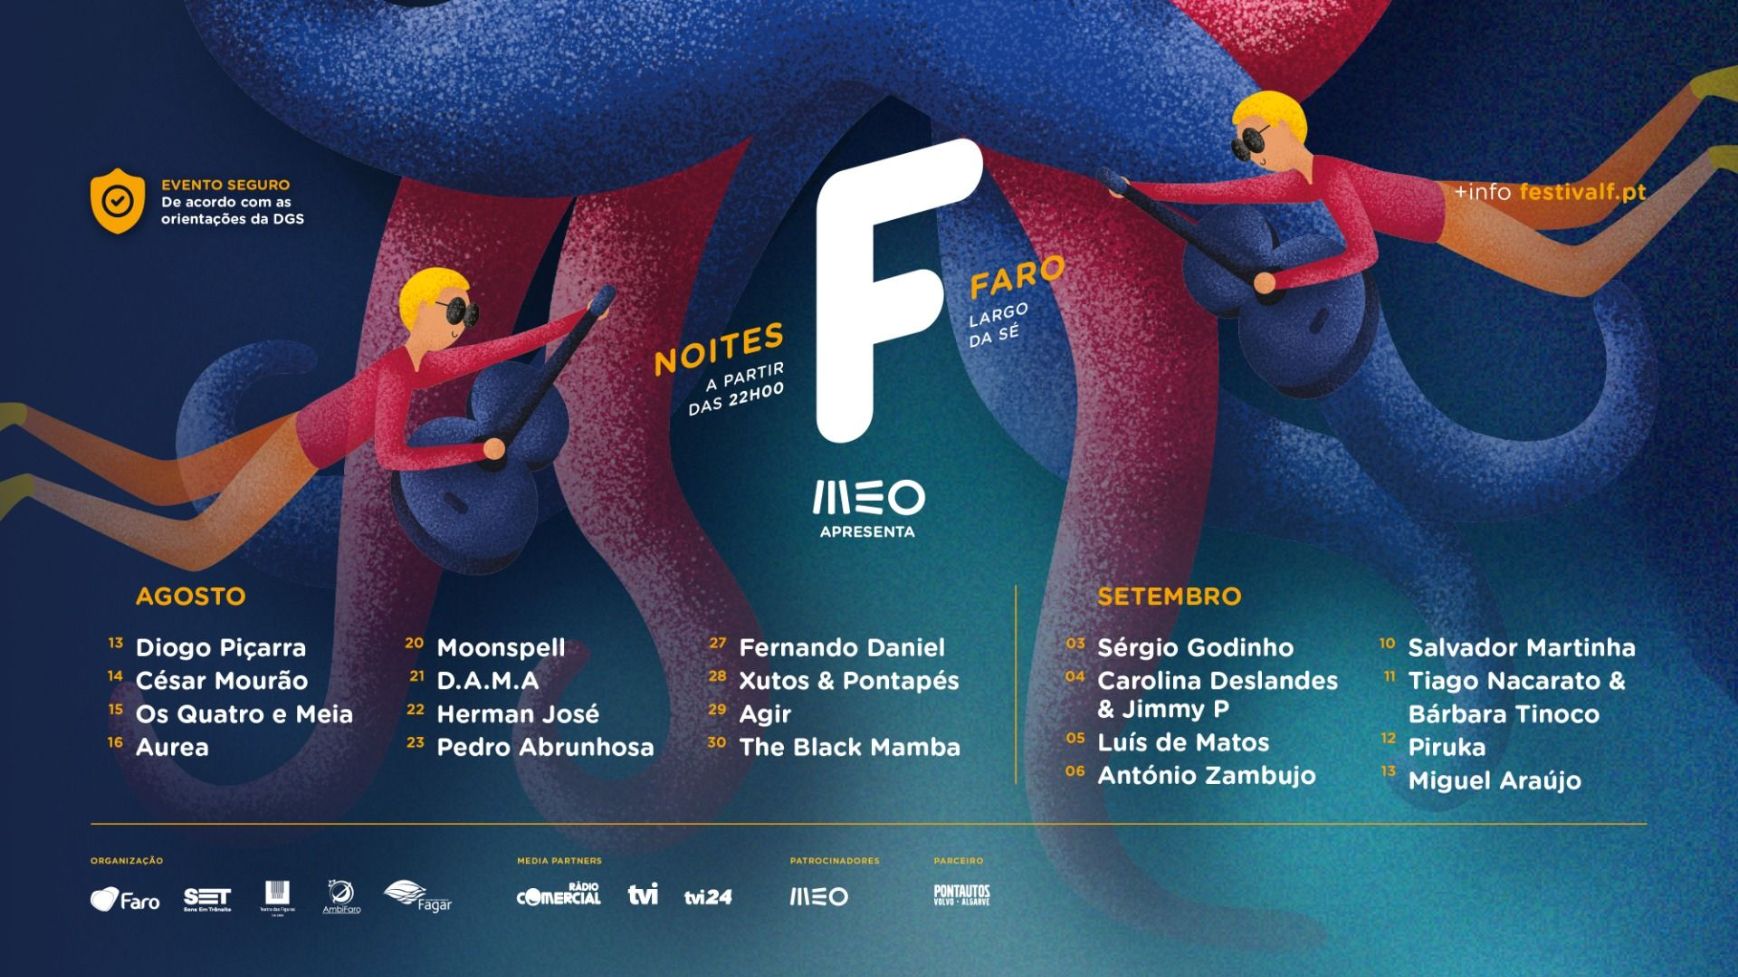 NOITES F celebram o FESTIVAL F de 13 de Agosto a 13 de Setembro, em Faro